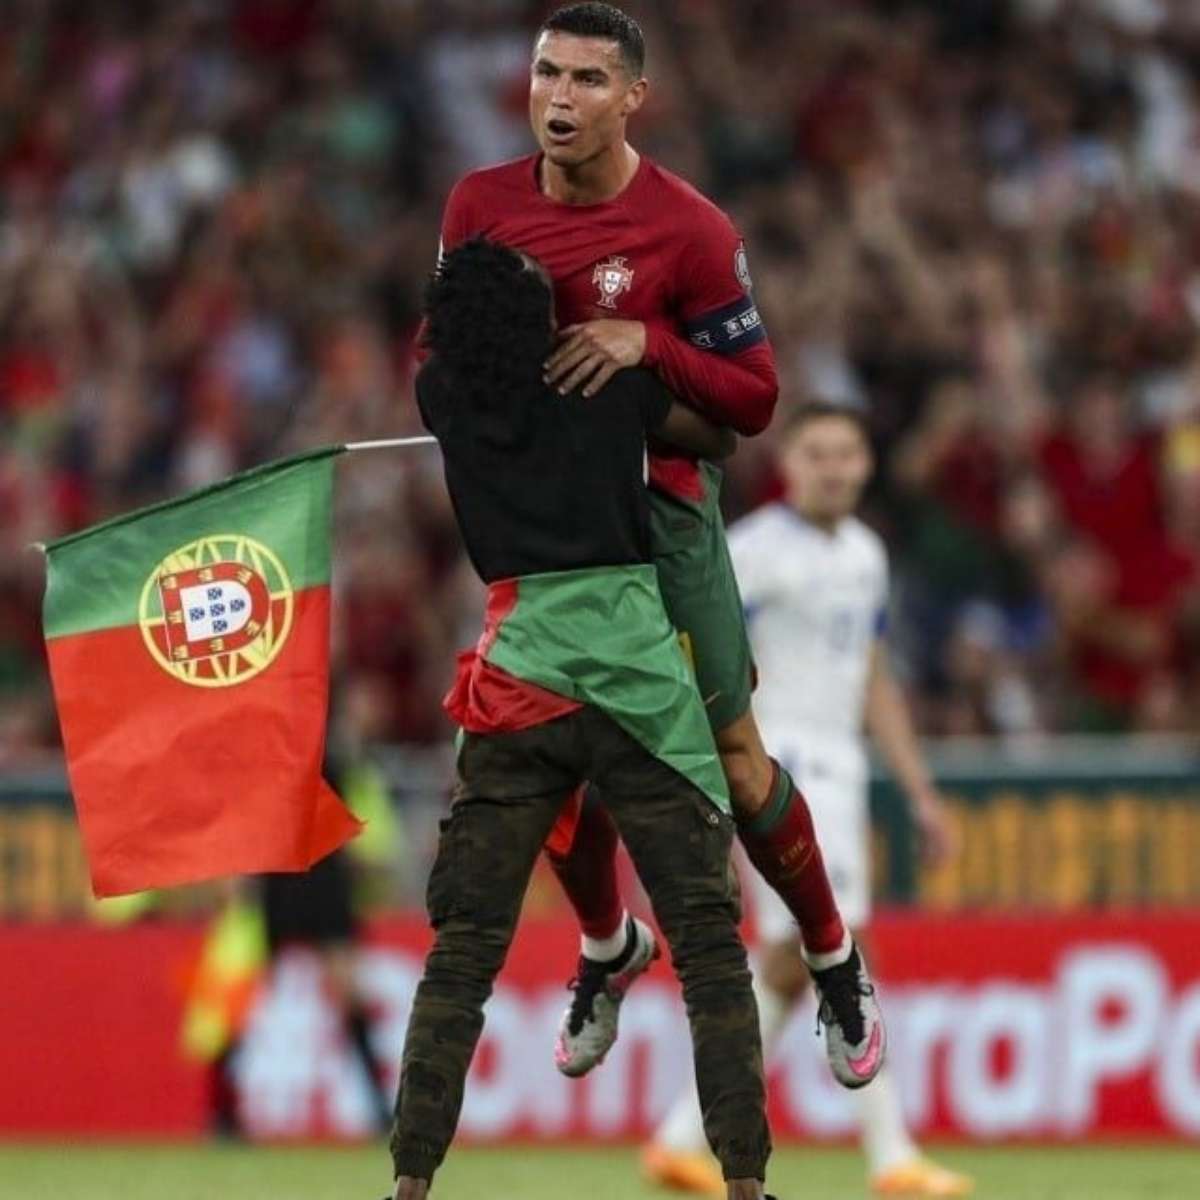 VÍDEO: adversário deixa Cristiano Ronaldo de mão estendida no relvado - CNN  Portugal